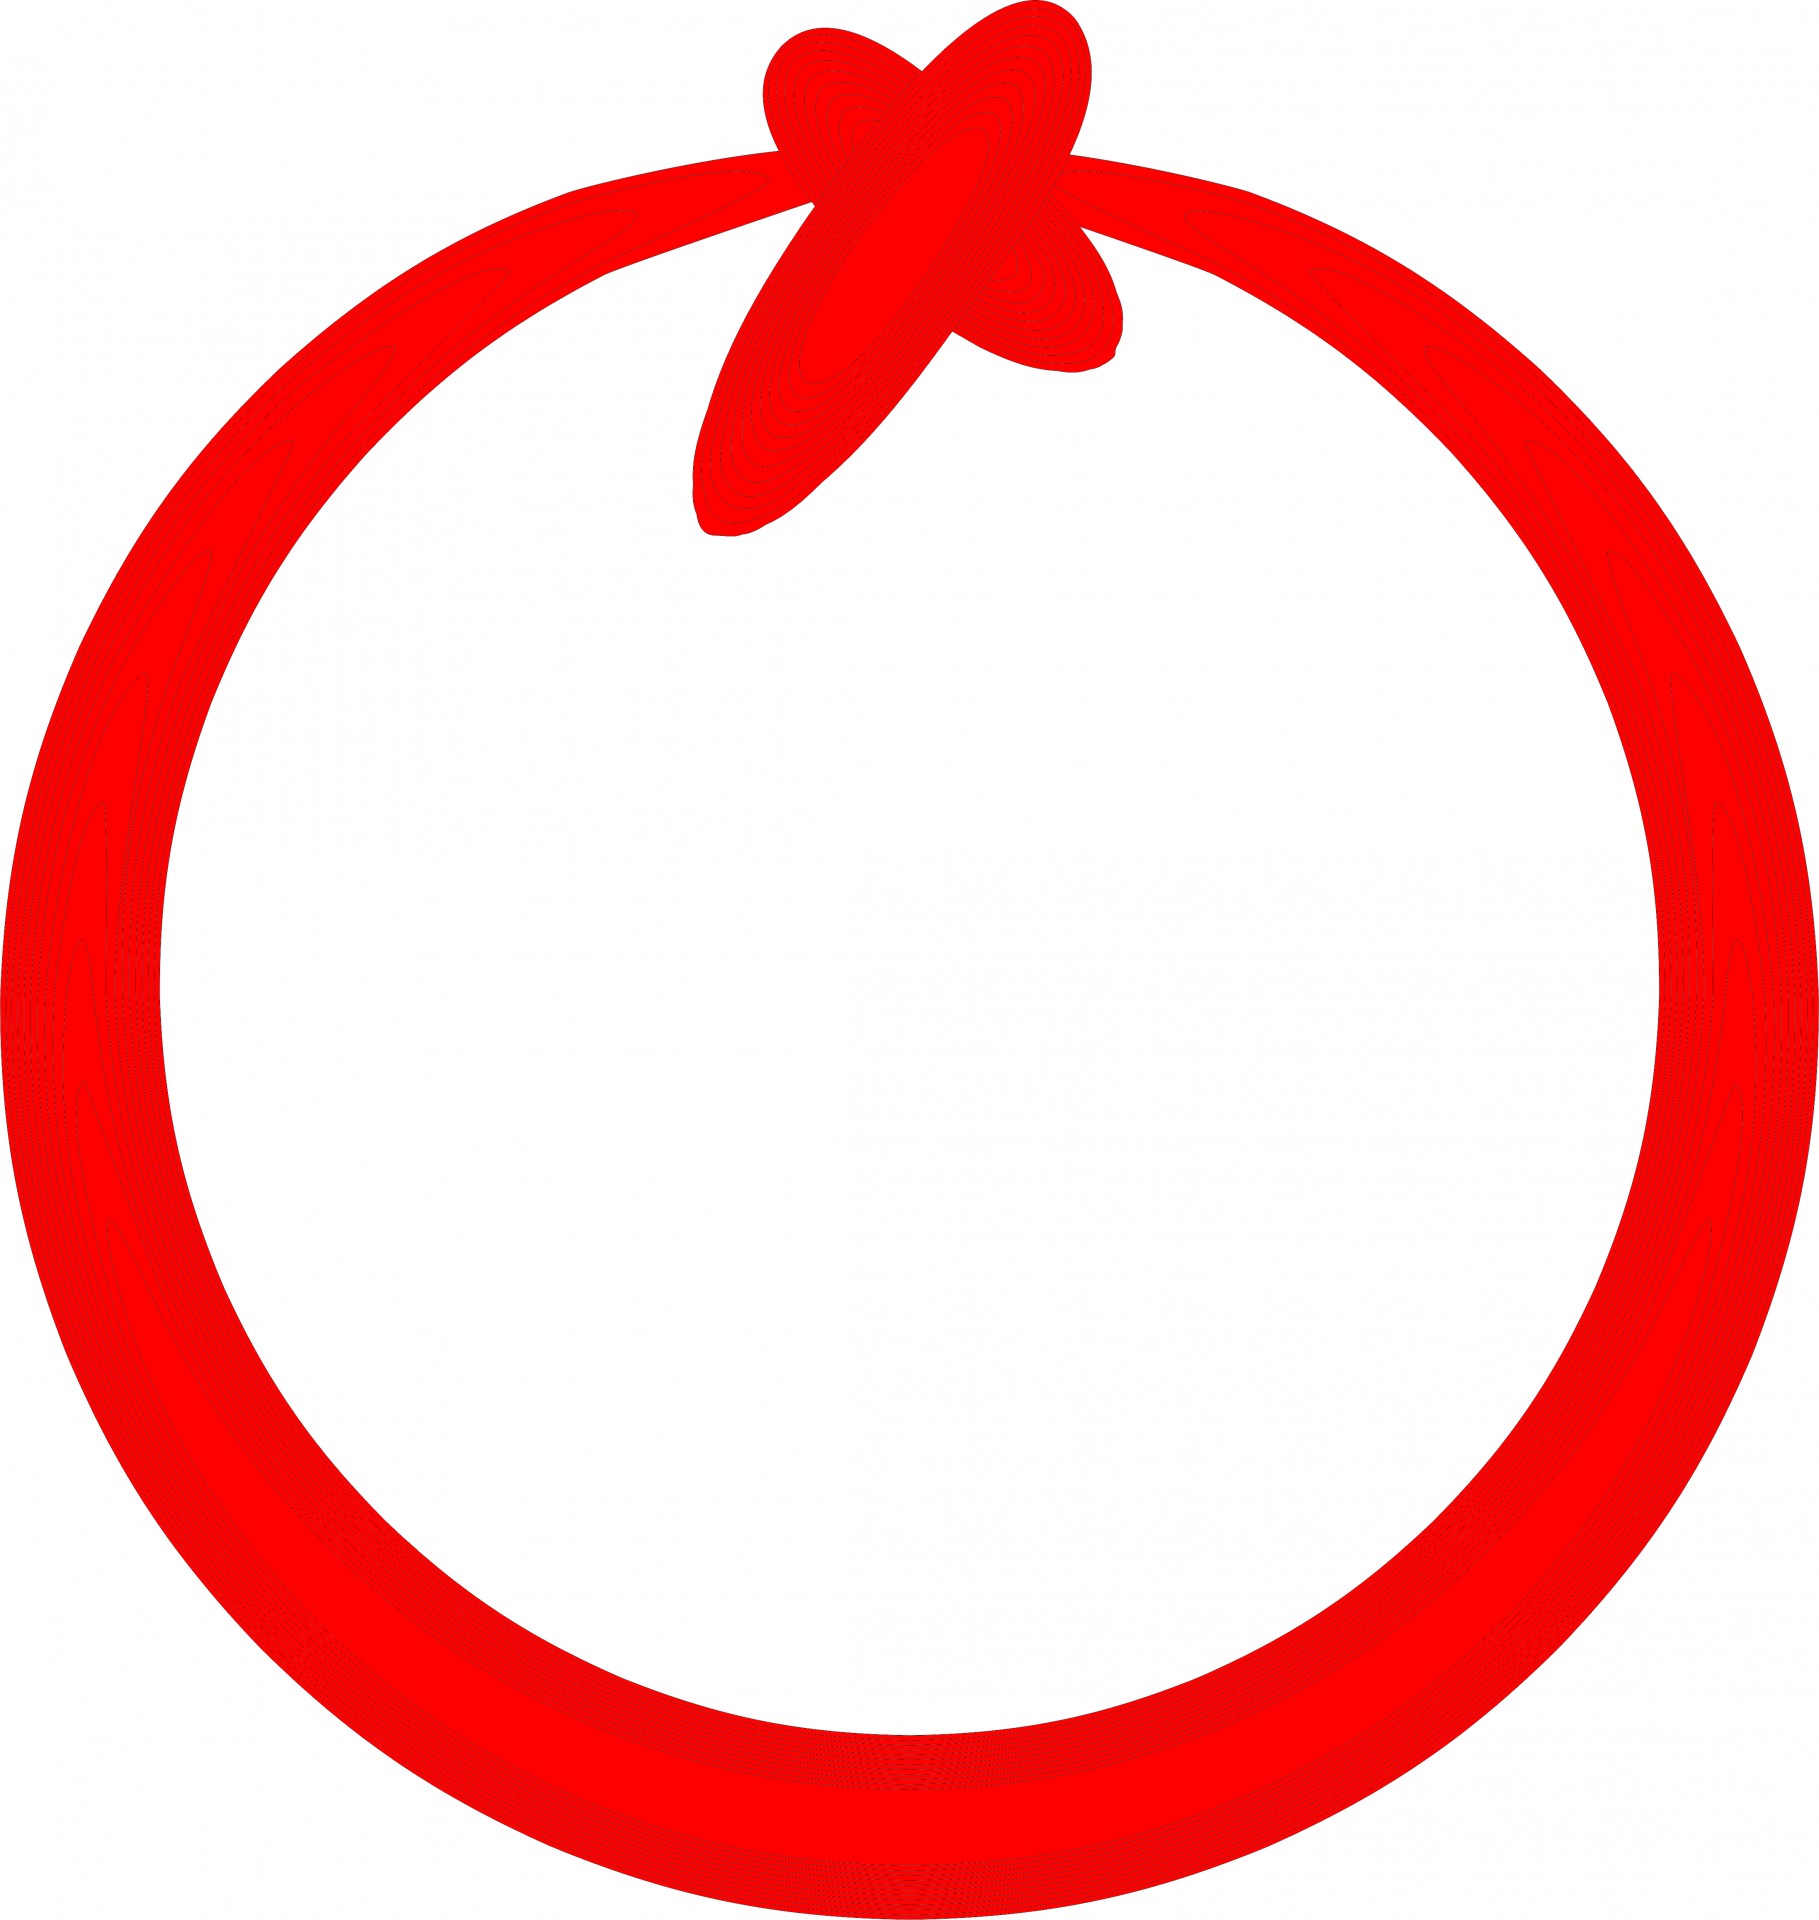 red round circle free photo